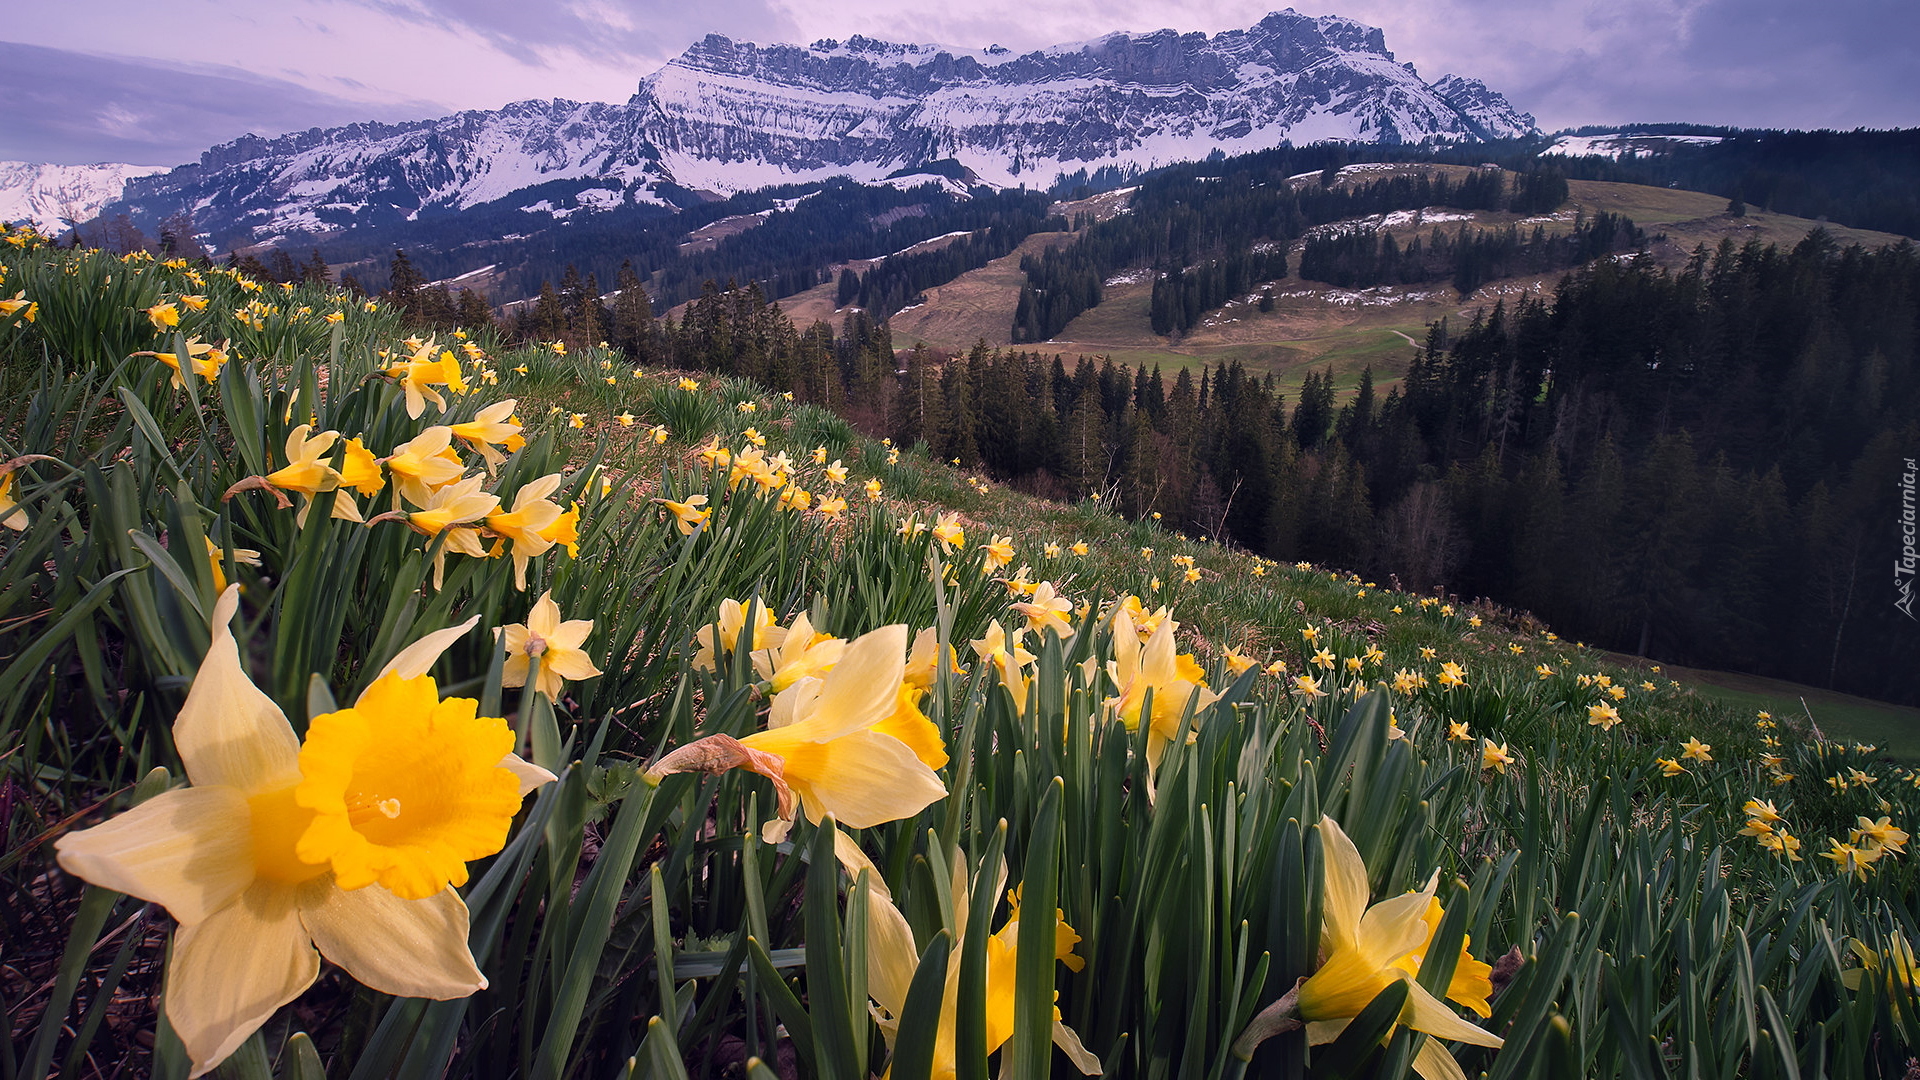 Wiosna, Góry, Alpy Emmentalskie, Dolina Emmental, Łąka, Narcyzy żonkile, Kanton Berno, Szwajcaria